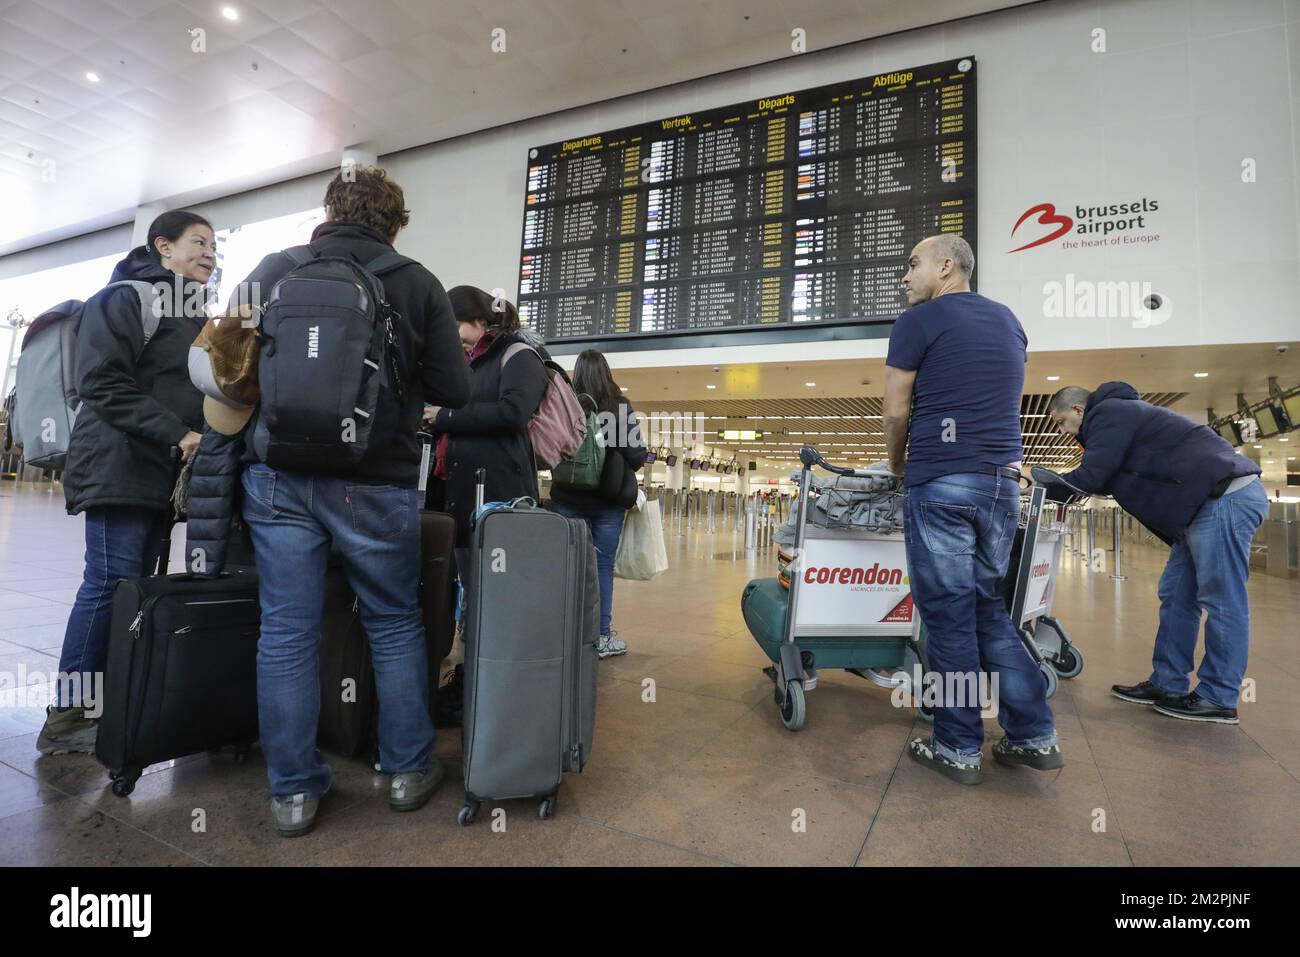 L'illustration montre des passagers avec des bagages qui ne semblent pas  être au courant de la fermeture, à l'aéroport national de Bruxelles à  Zaventem, lors d'une grève générale nationale, le mercredi 13